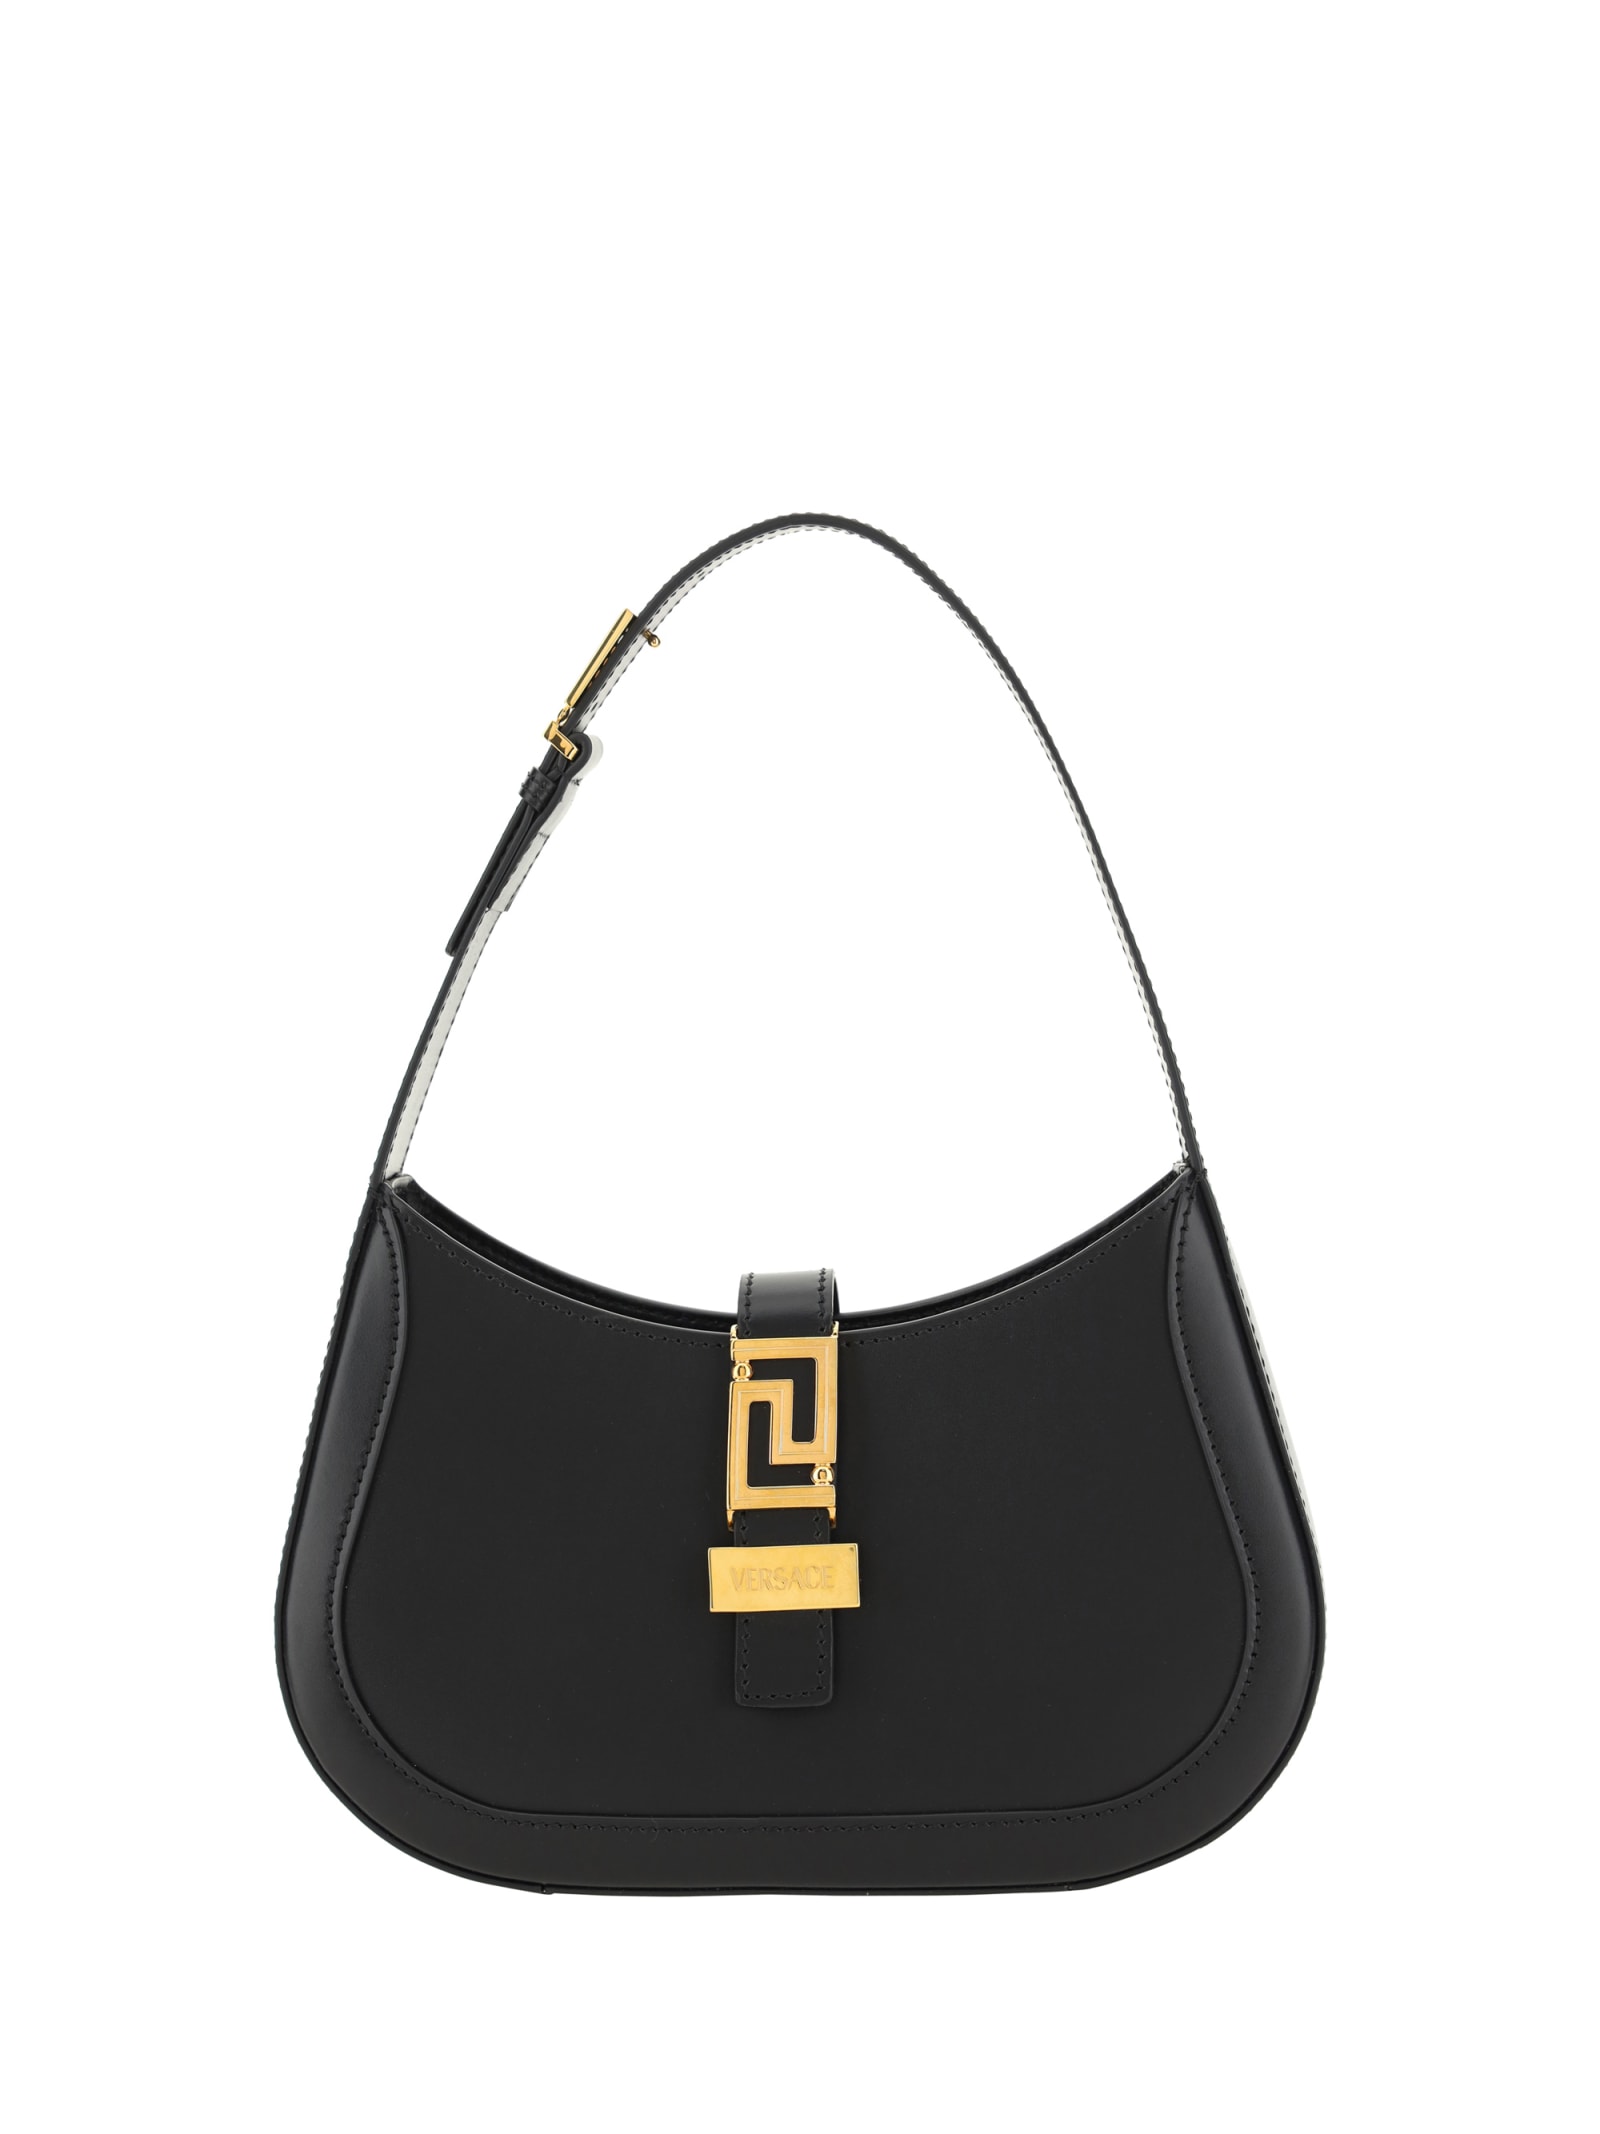 Versace Greca Goddess Handbags In Black- Gold